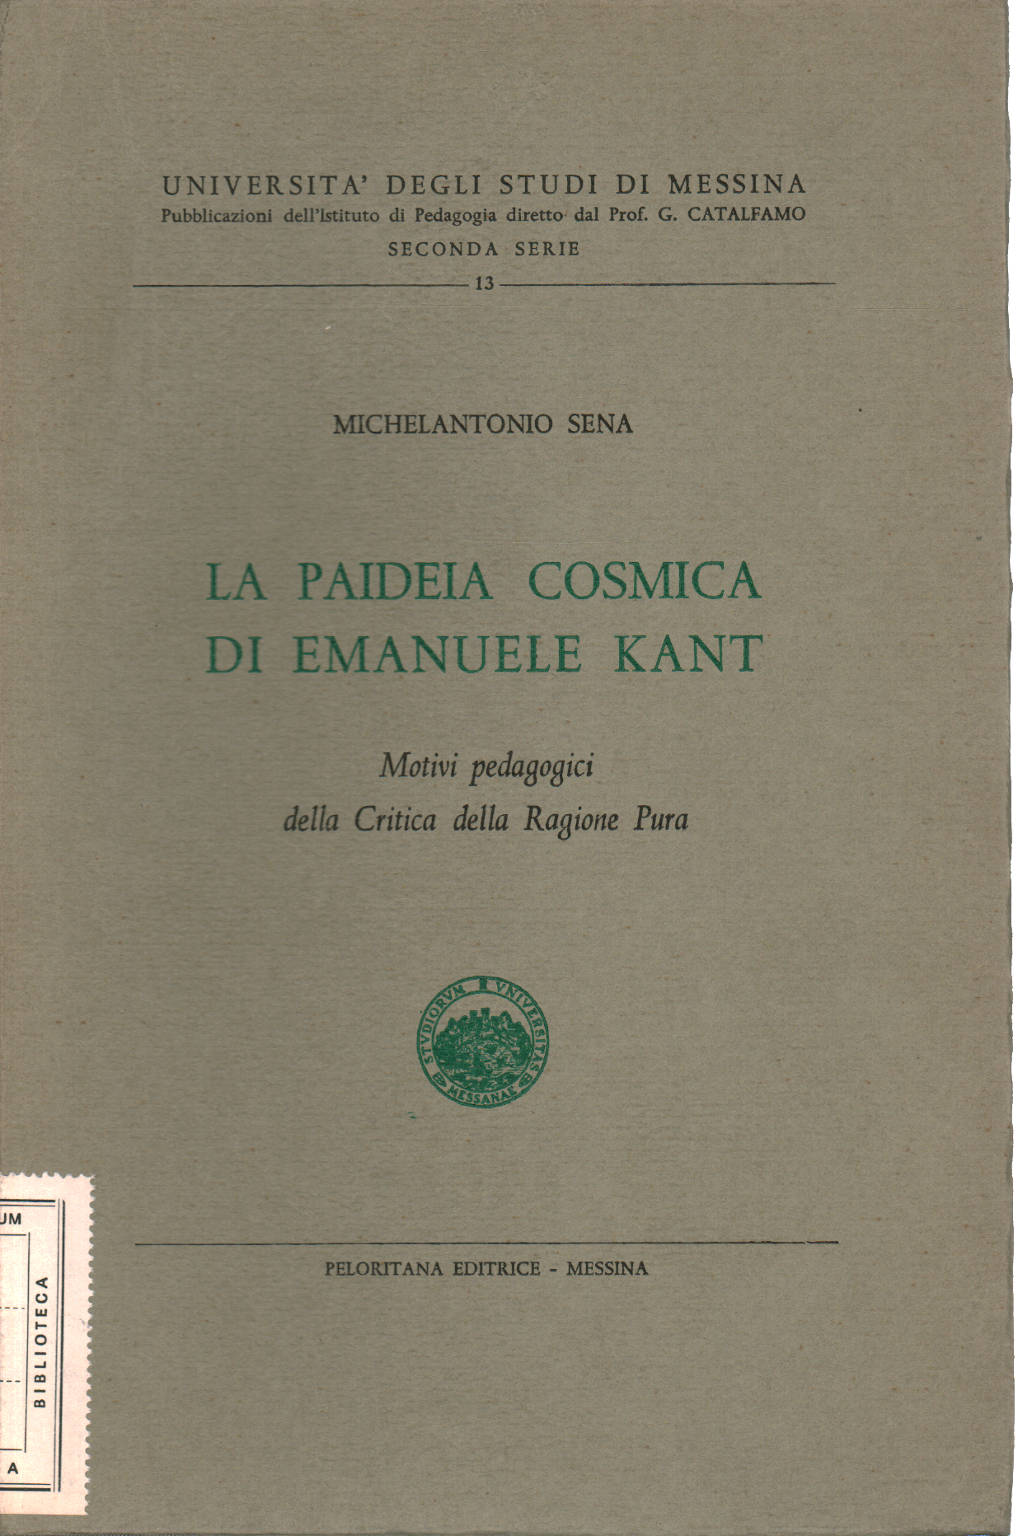 Die kosmische Paideia von Emanuel Kant, Michelantonio Sena